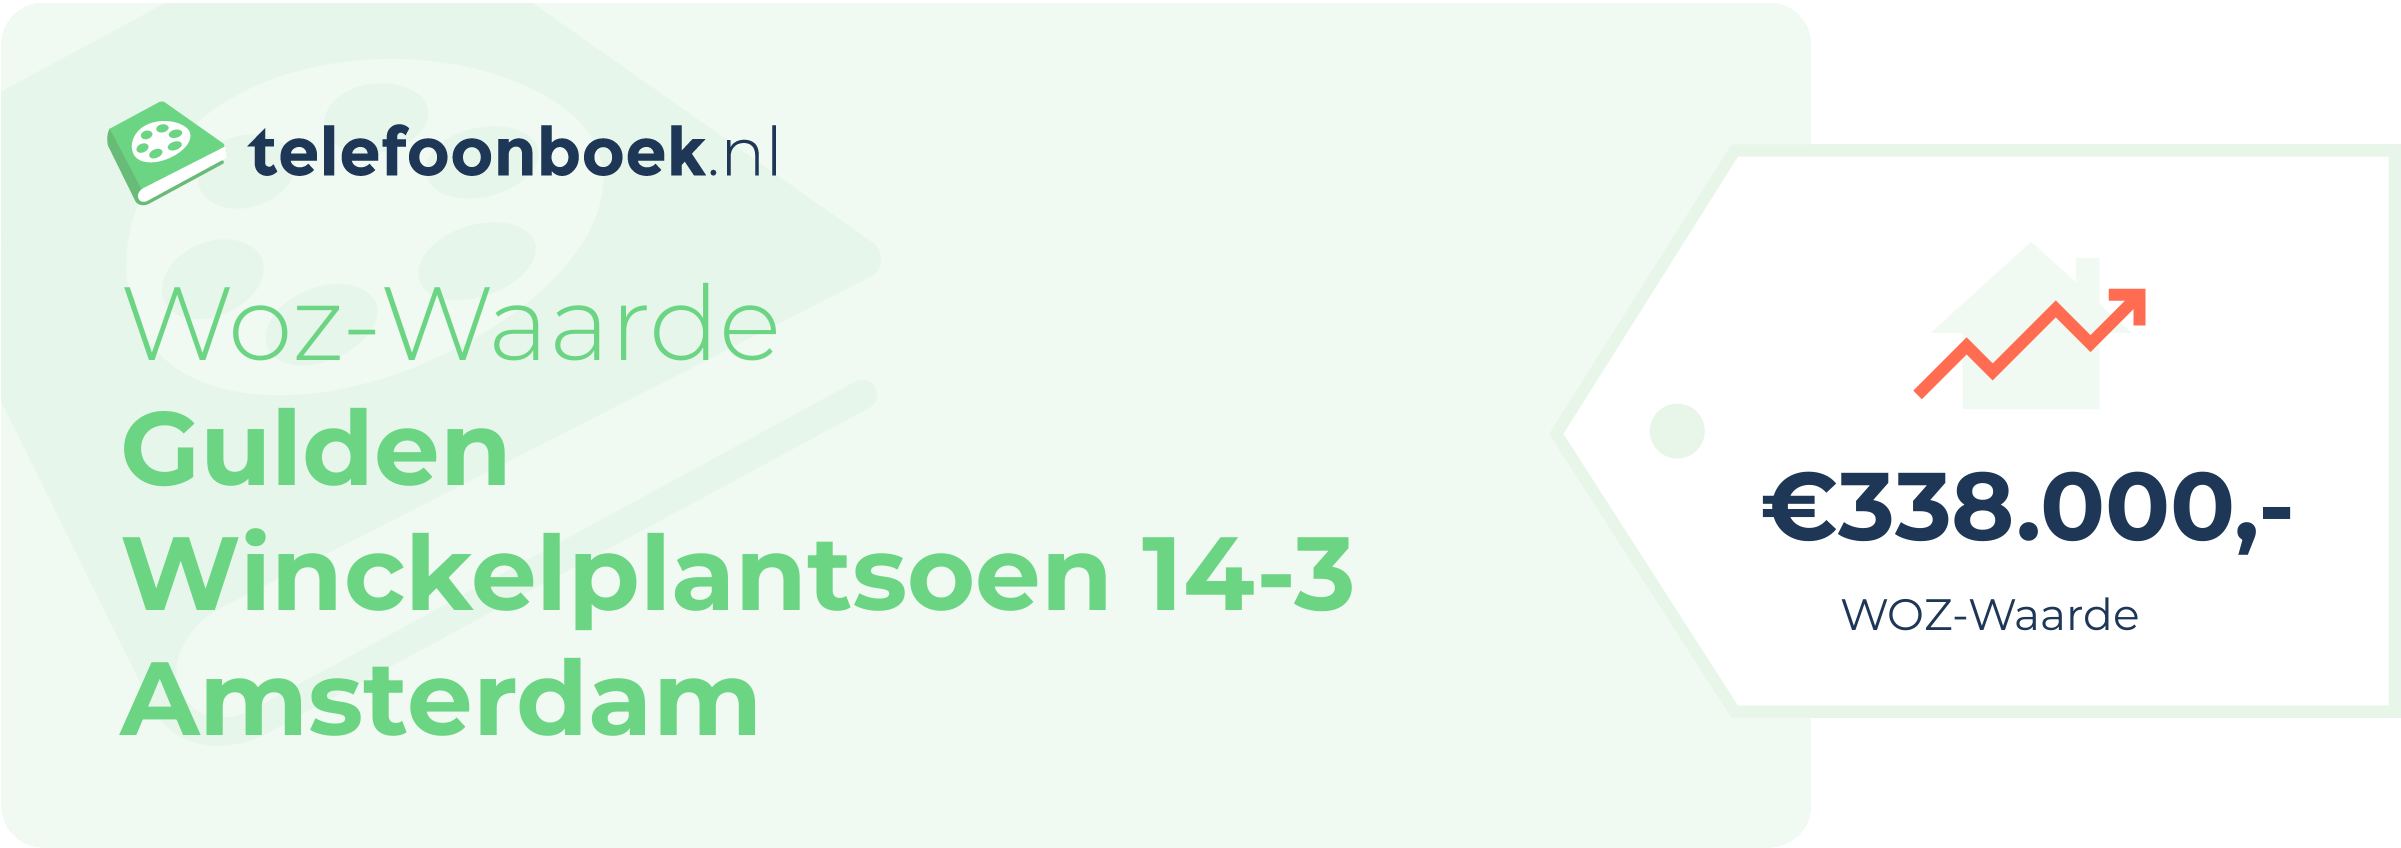 WOZ-waarde Gulden Winckelplantsoen 14-3 Amsterdam